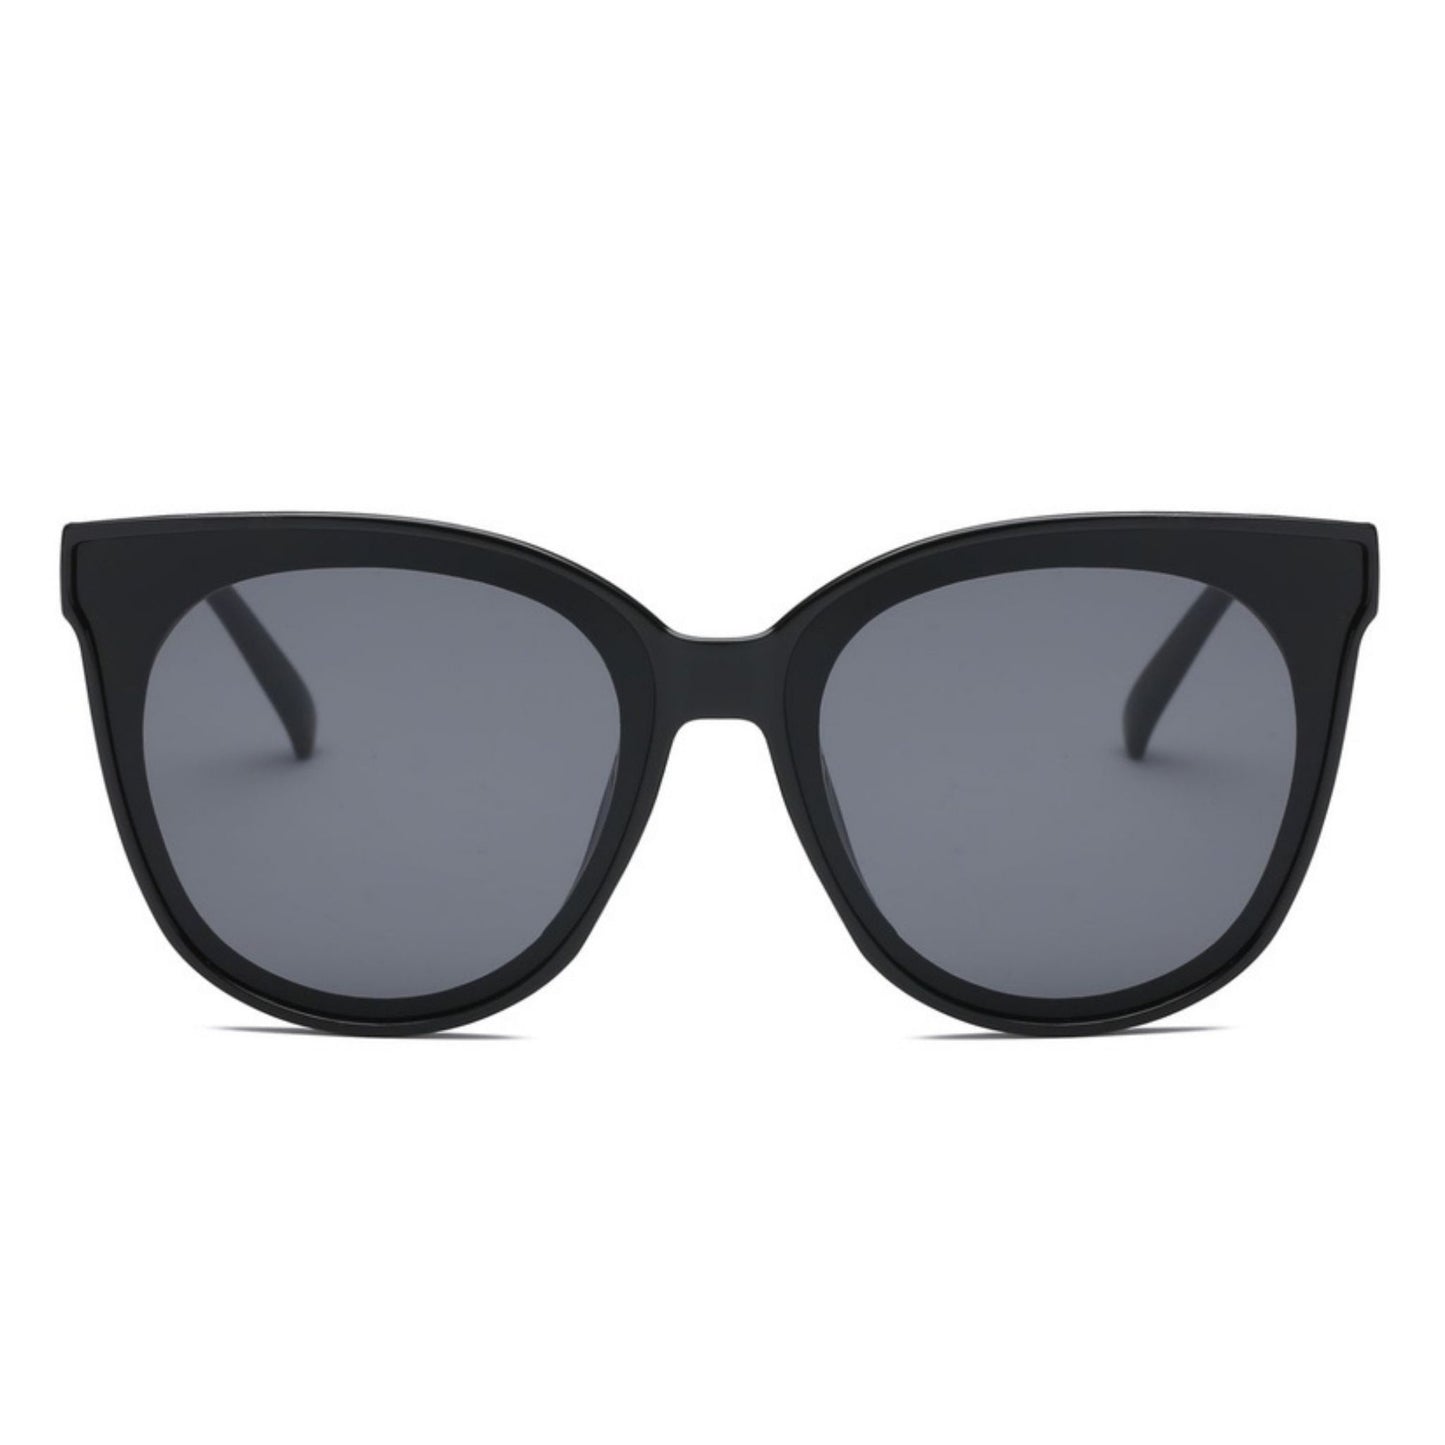 Round Retro Cat Eye Sunglasses